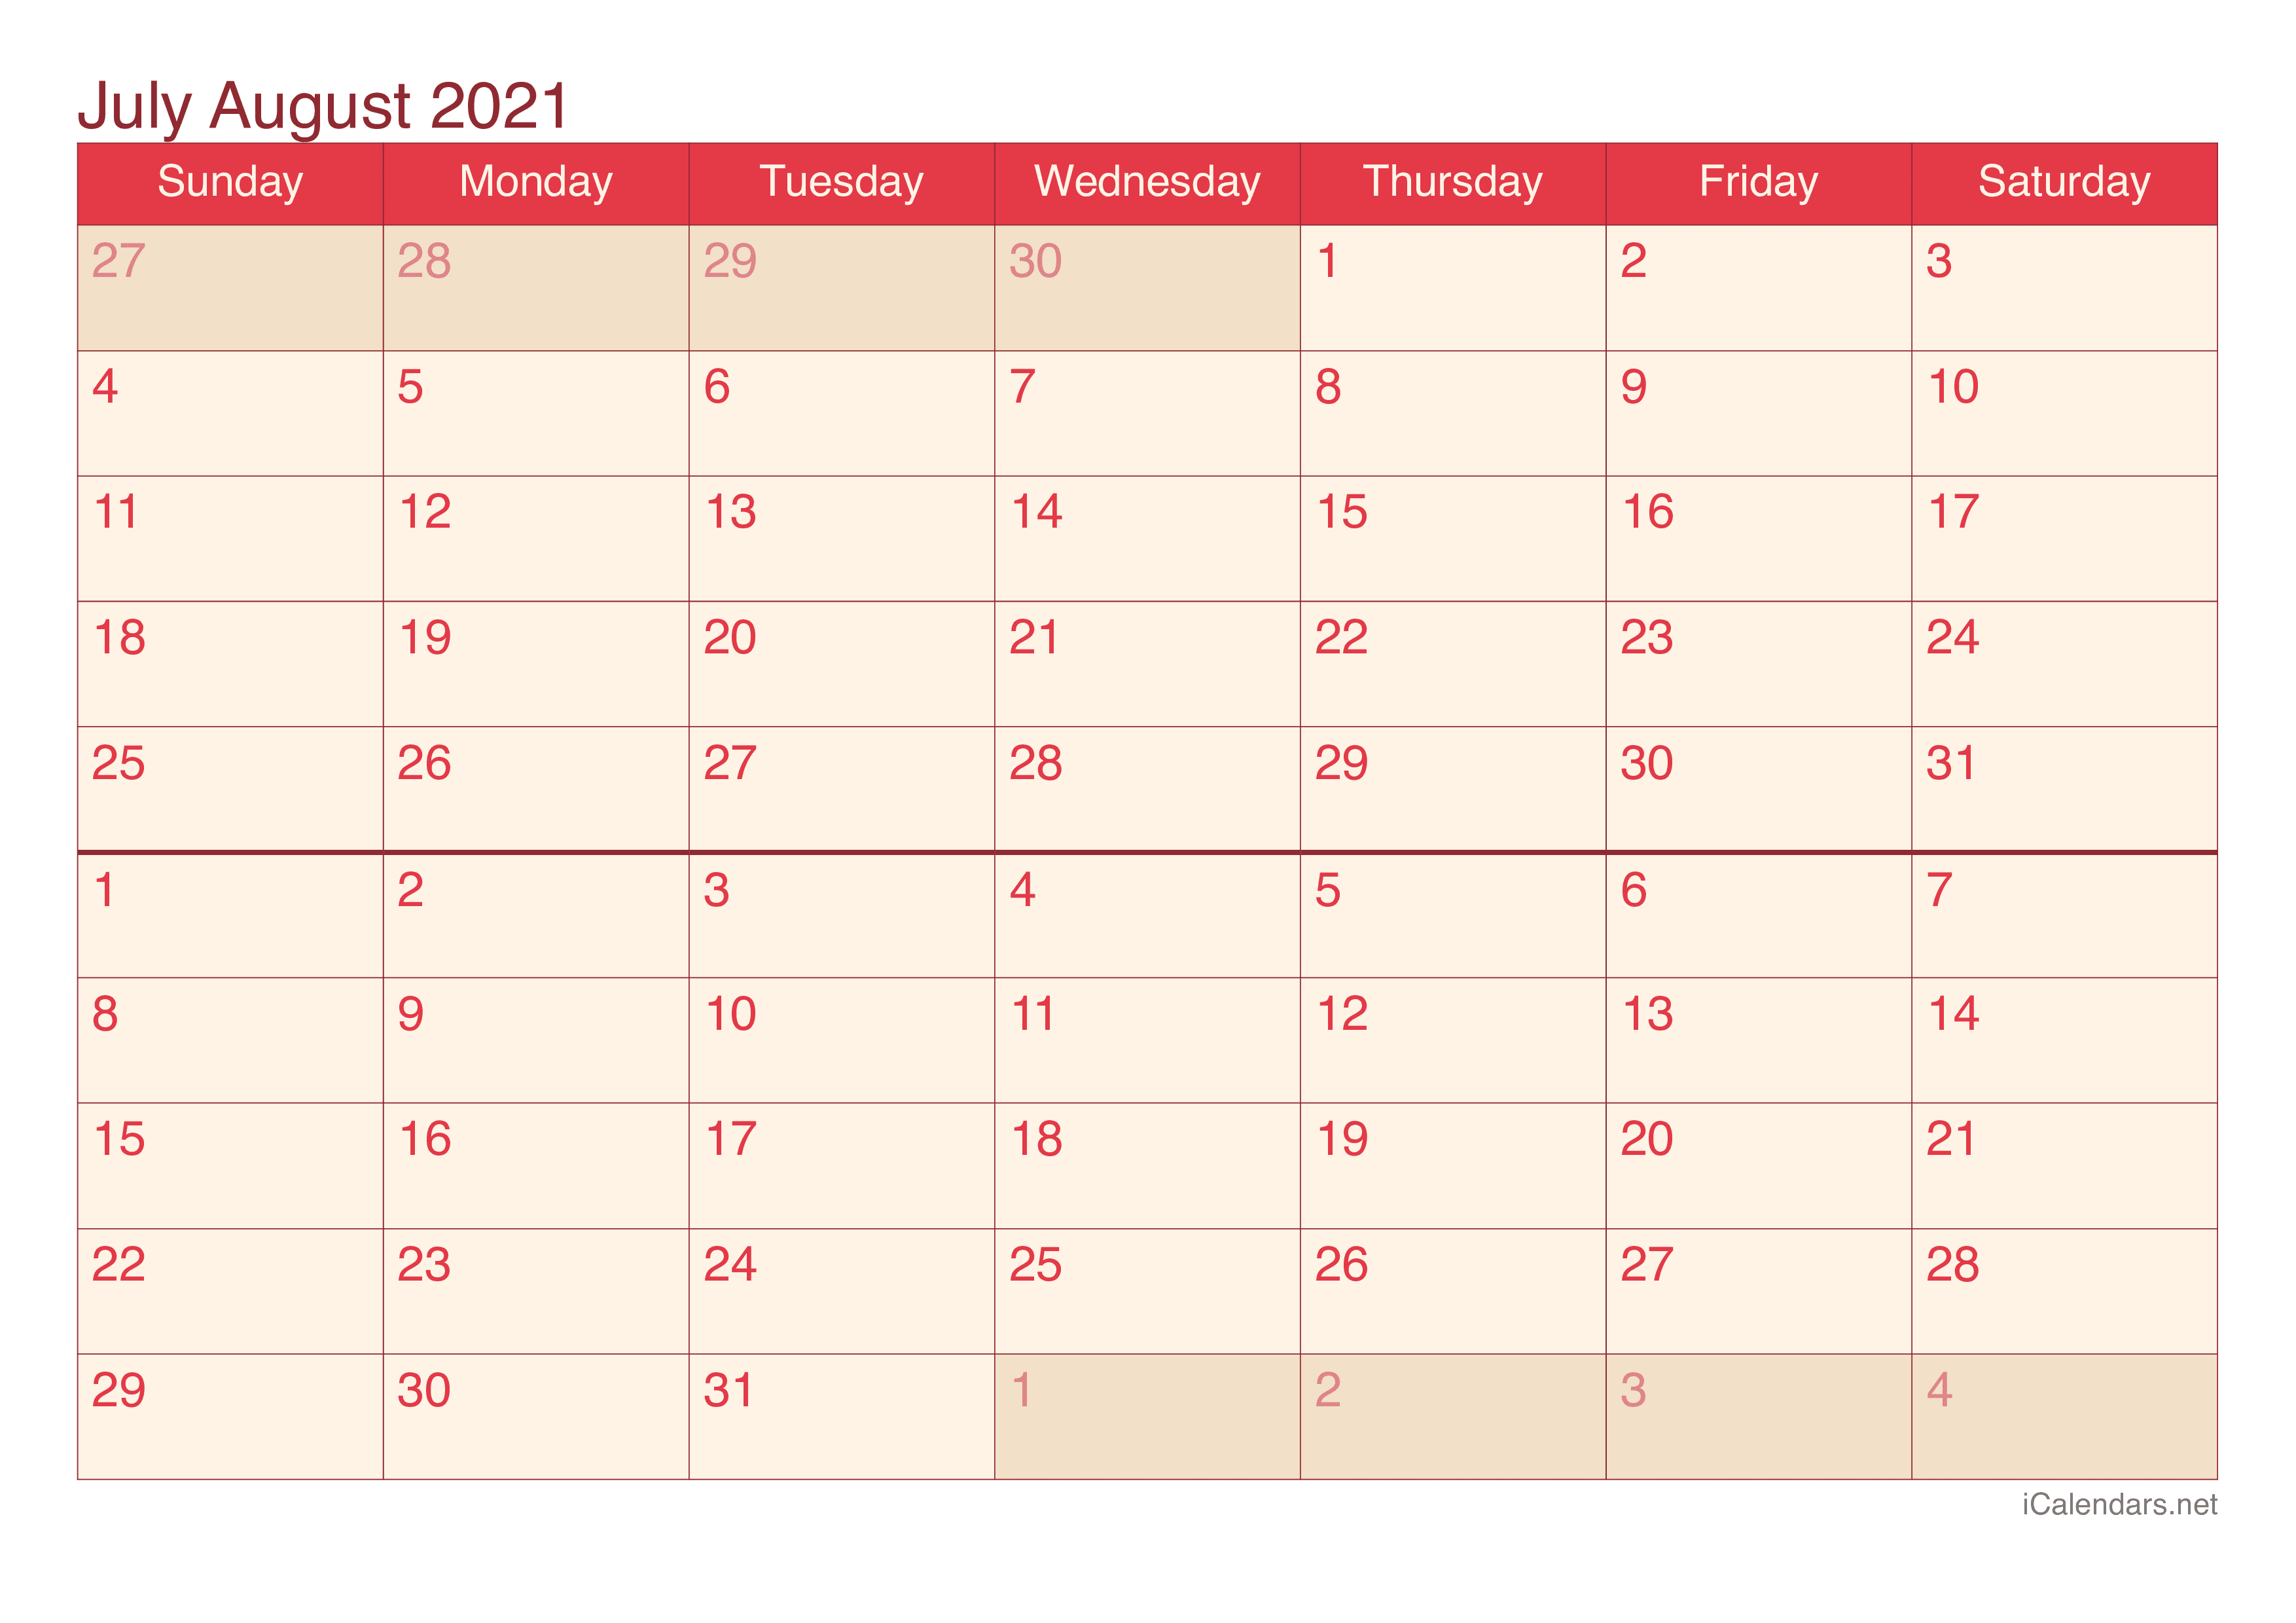 2021 July August Calendar - Cherry